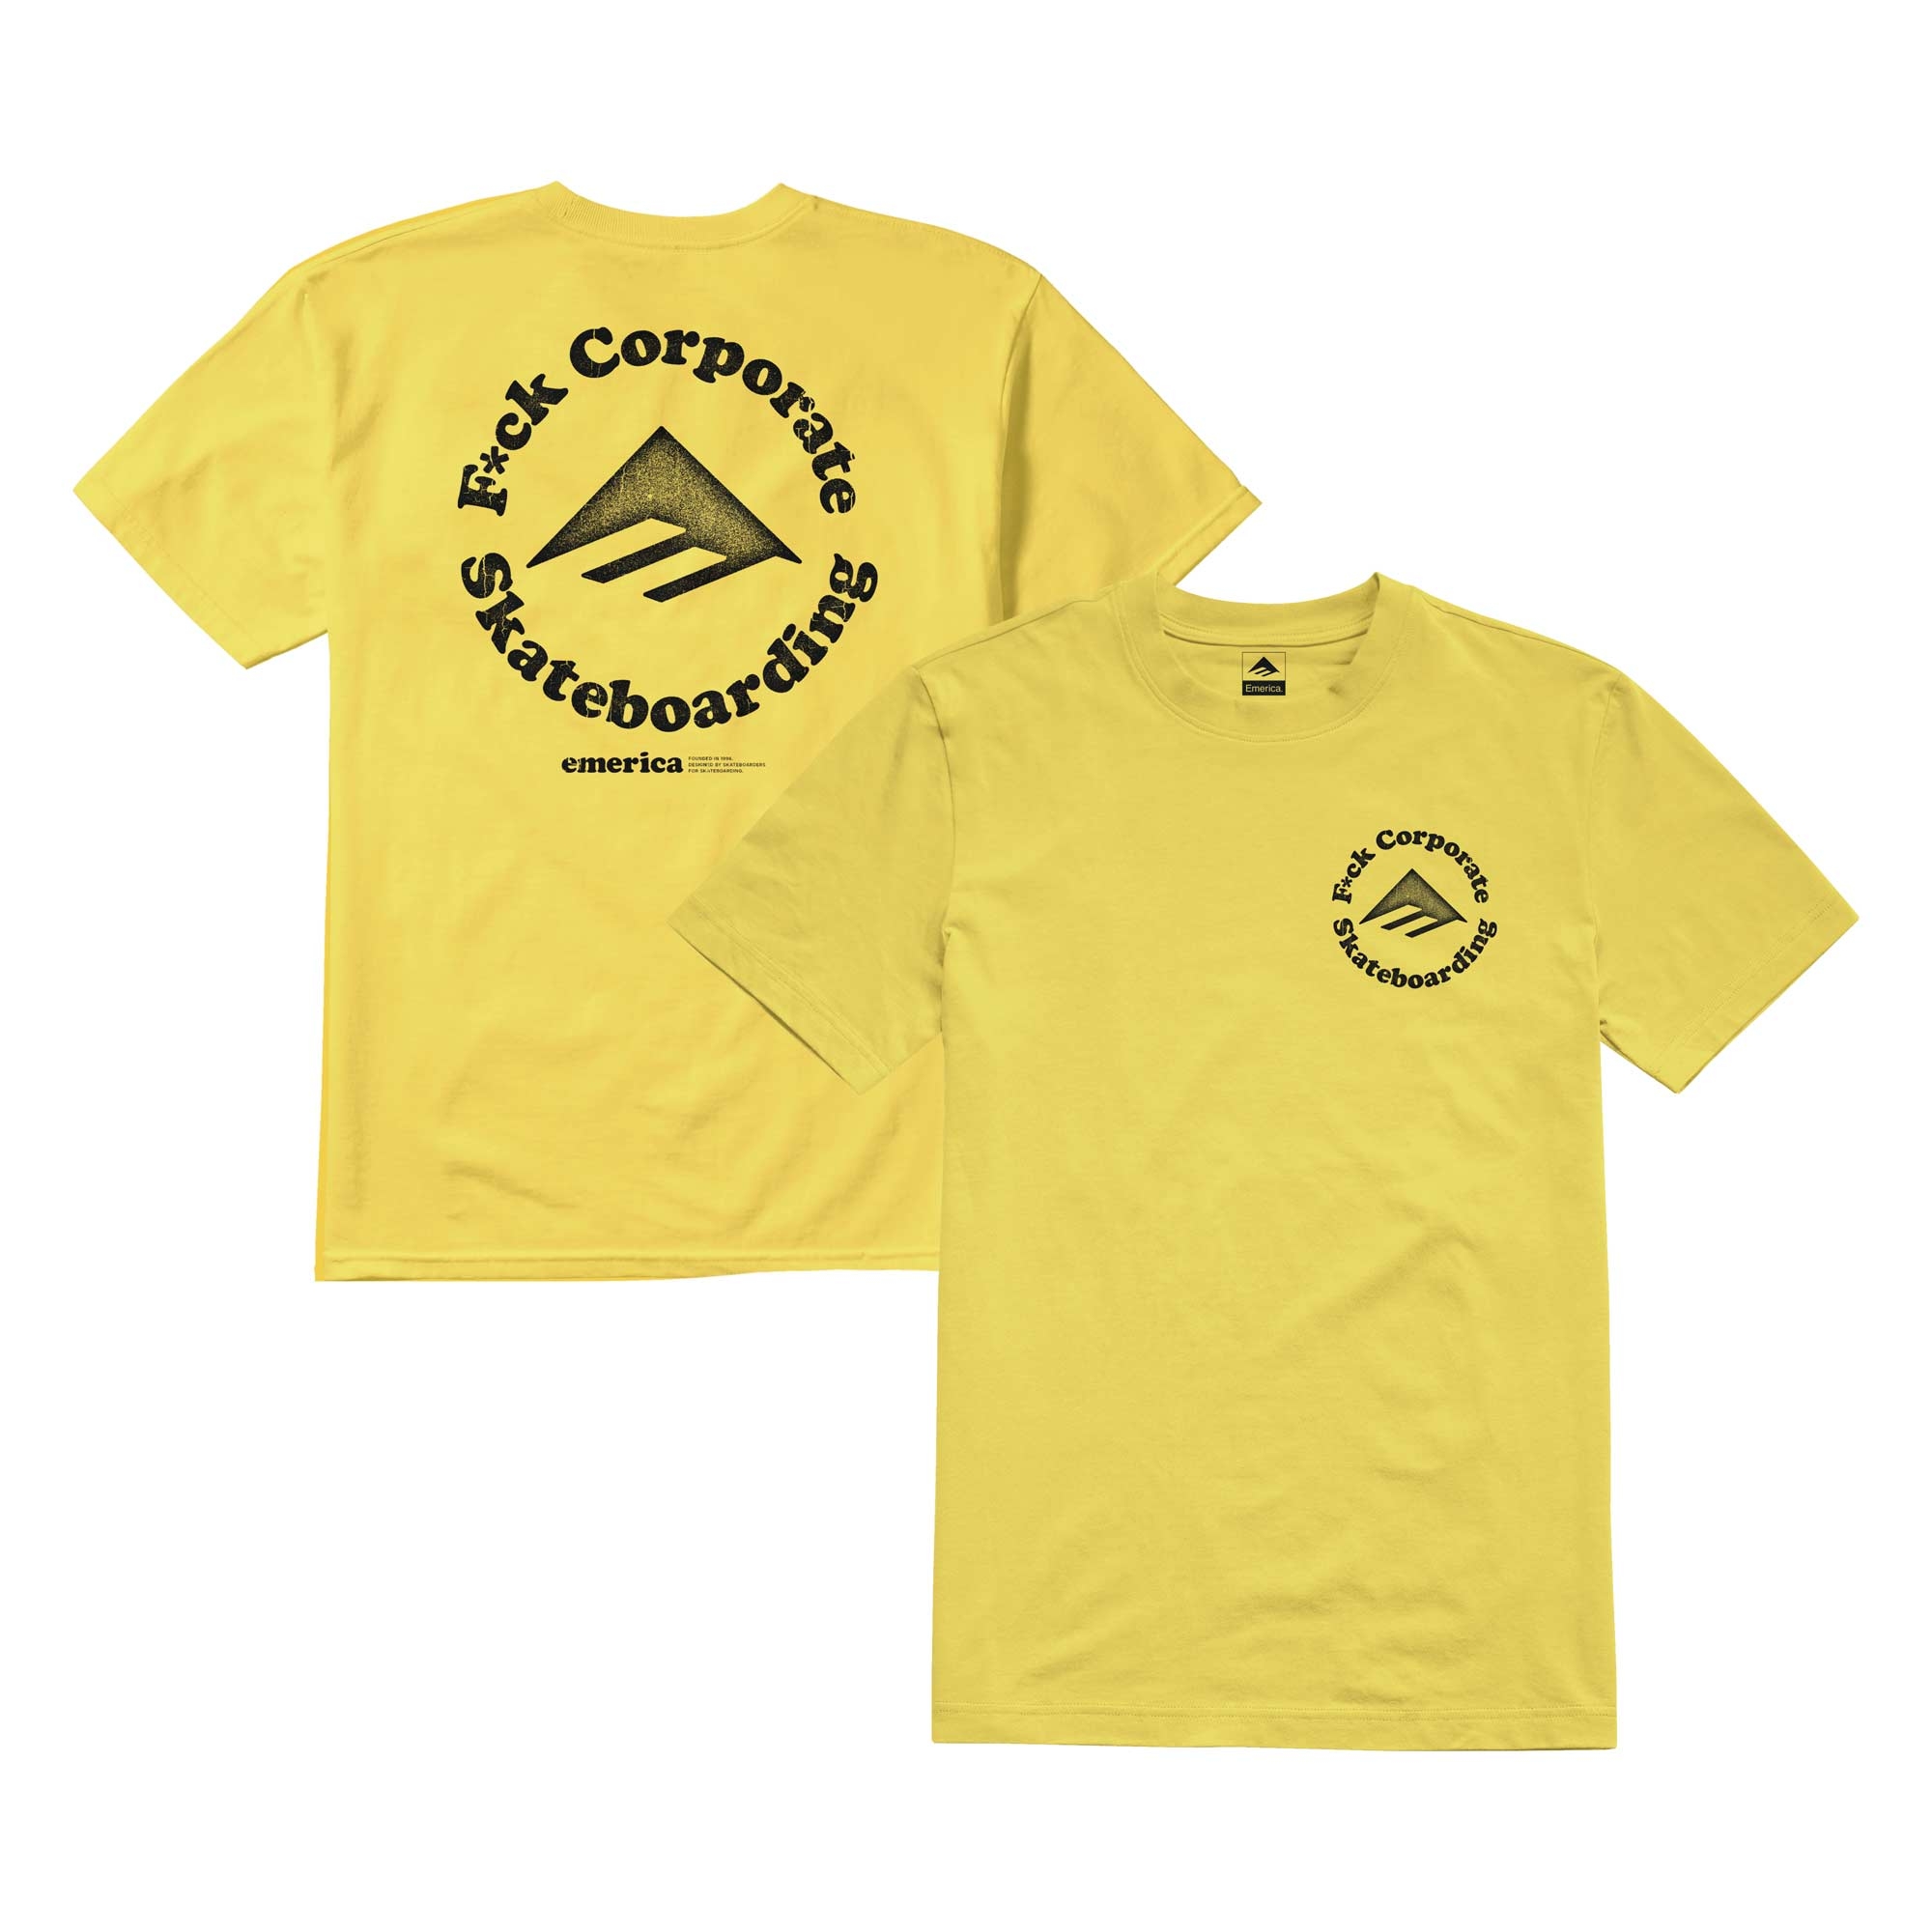 EMERICA T-Shirt EFF CORPORA 2 yellow